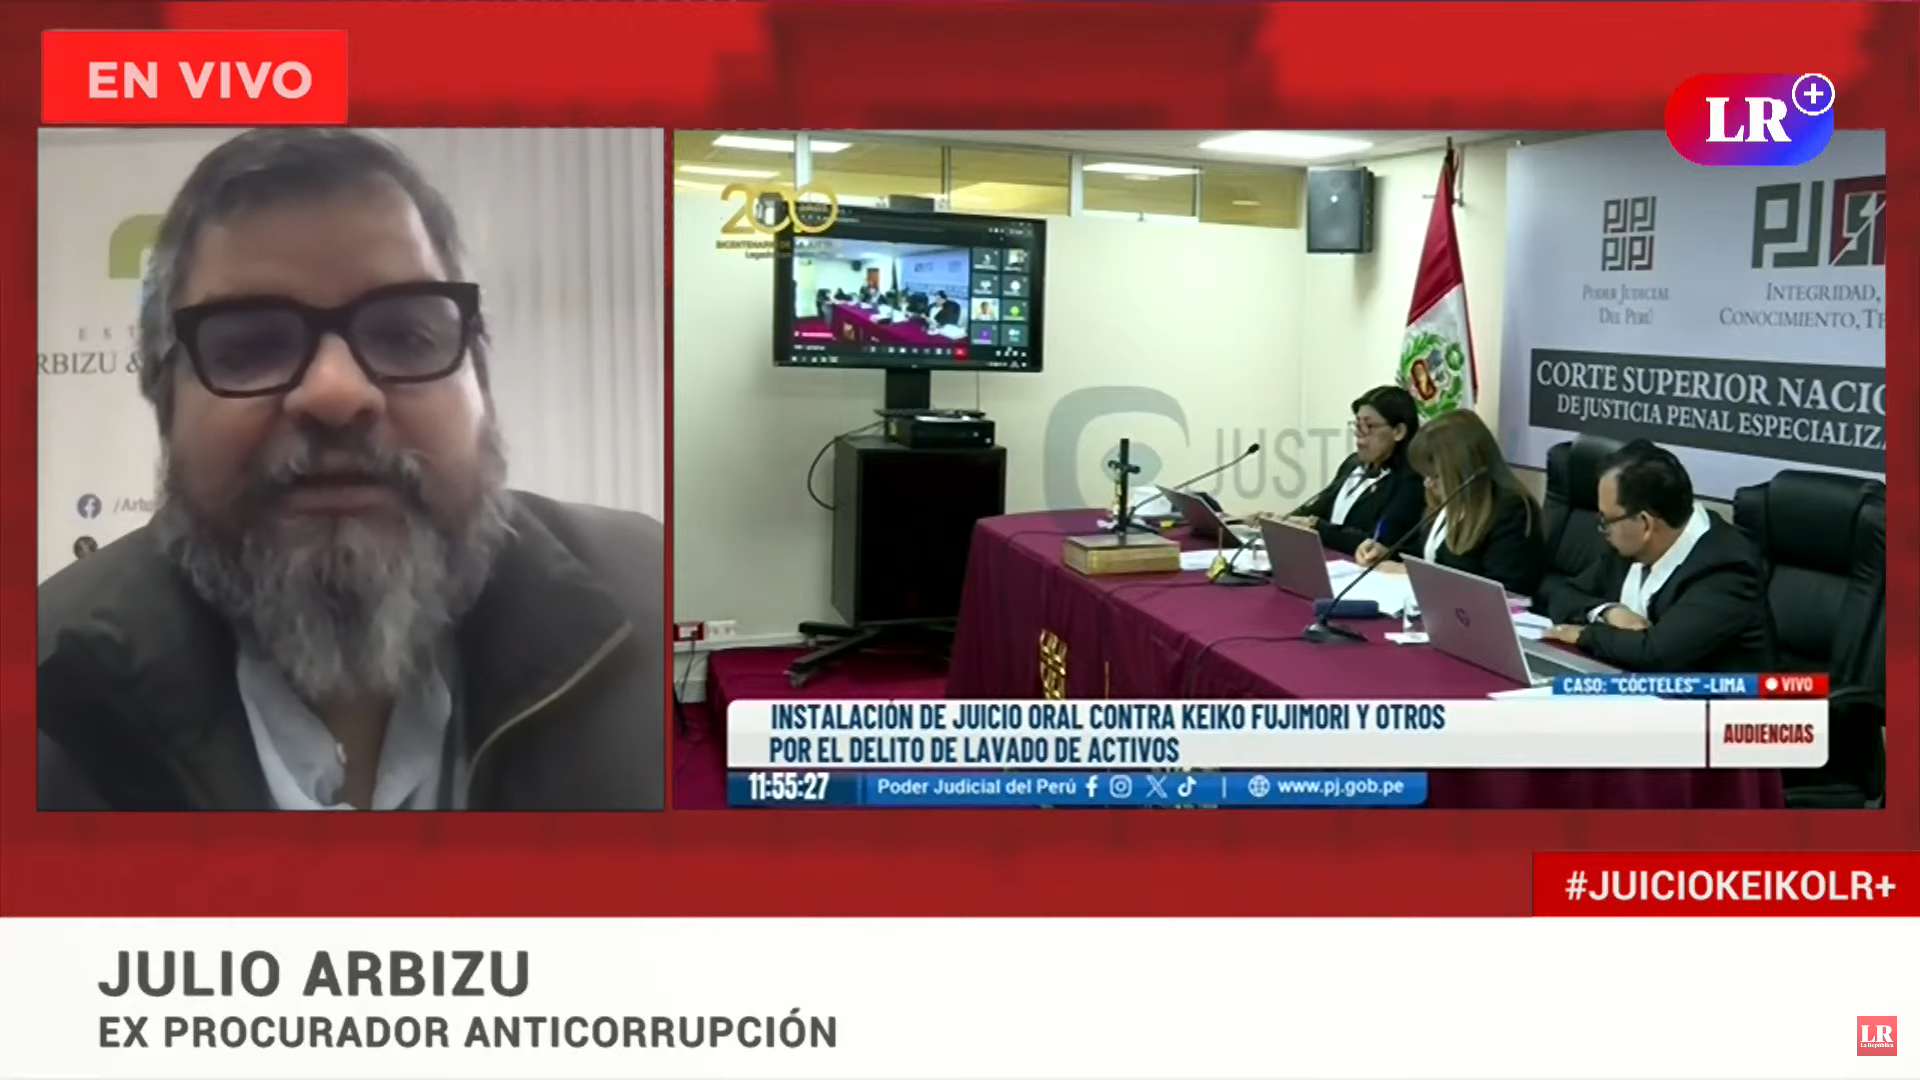 
                                 Julio Arbizu advierte que juicio podría ser utilizado políticamente por Keiko Fujimori para sus intereses 
                            